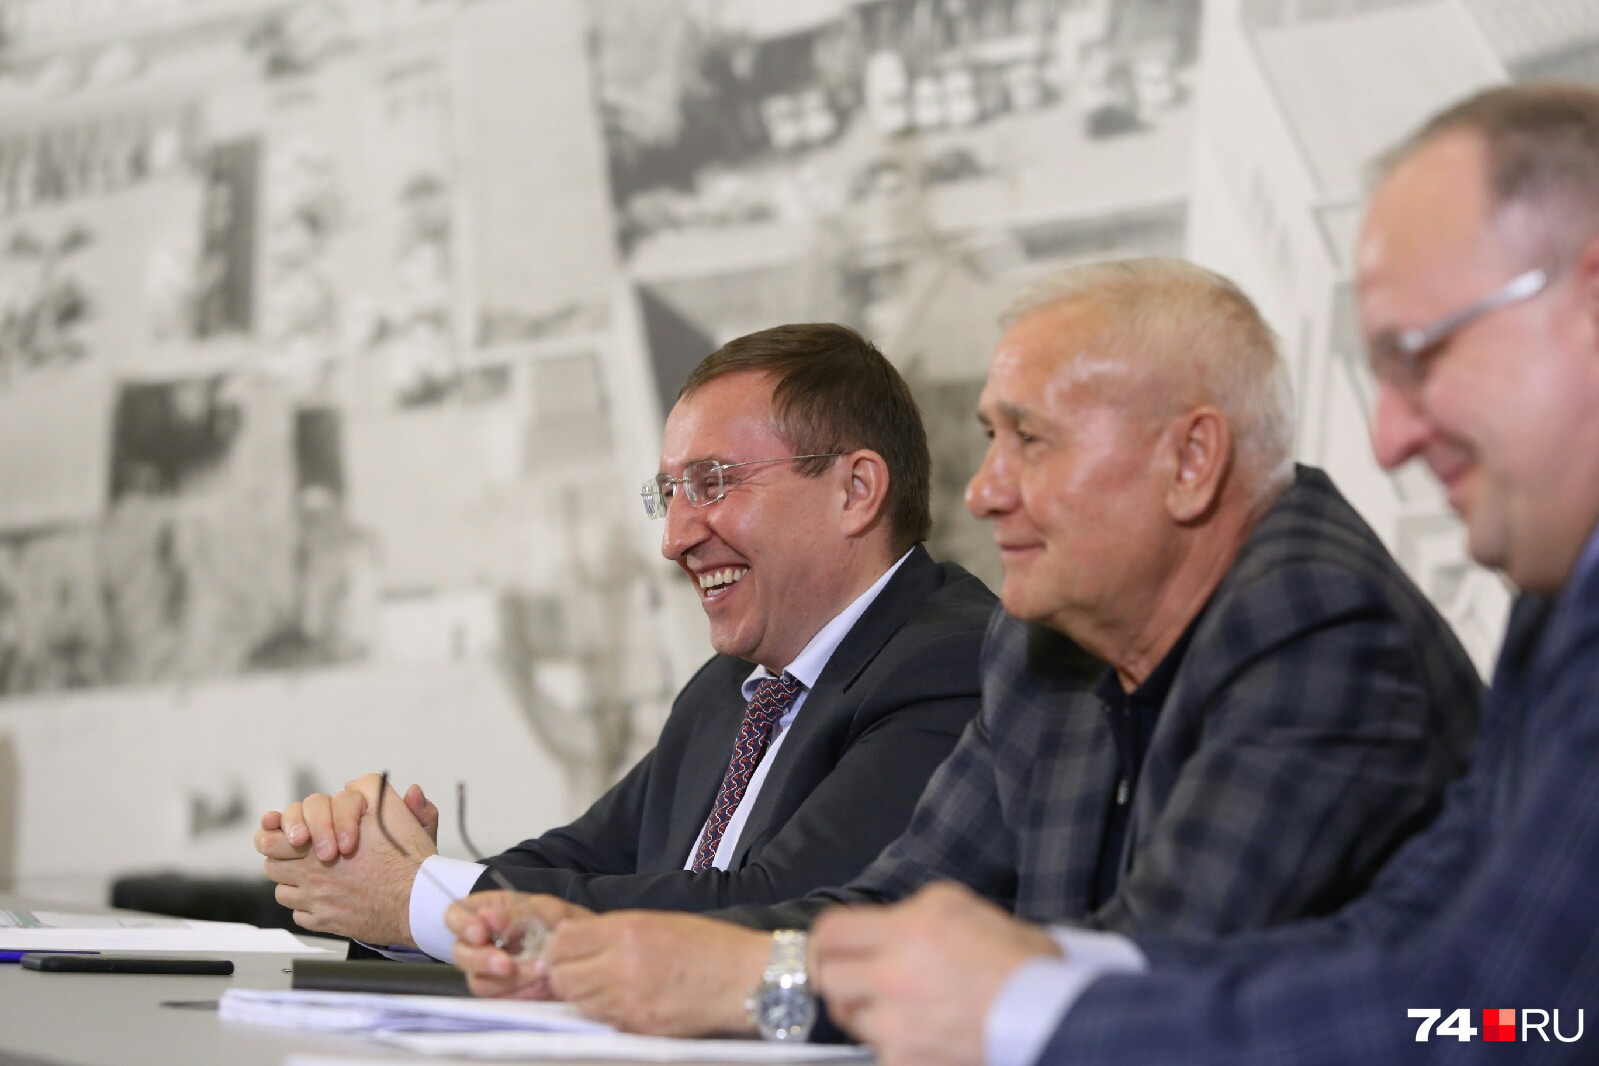 Сергей Овчинников (слева) смеётся, Виталий Рыльских молчит